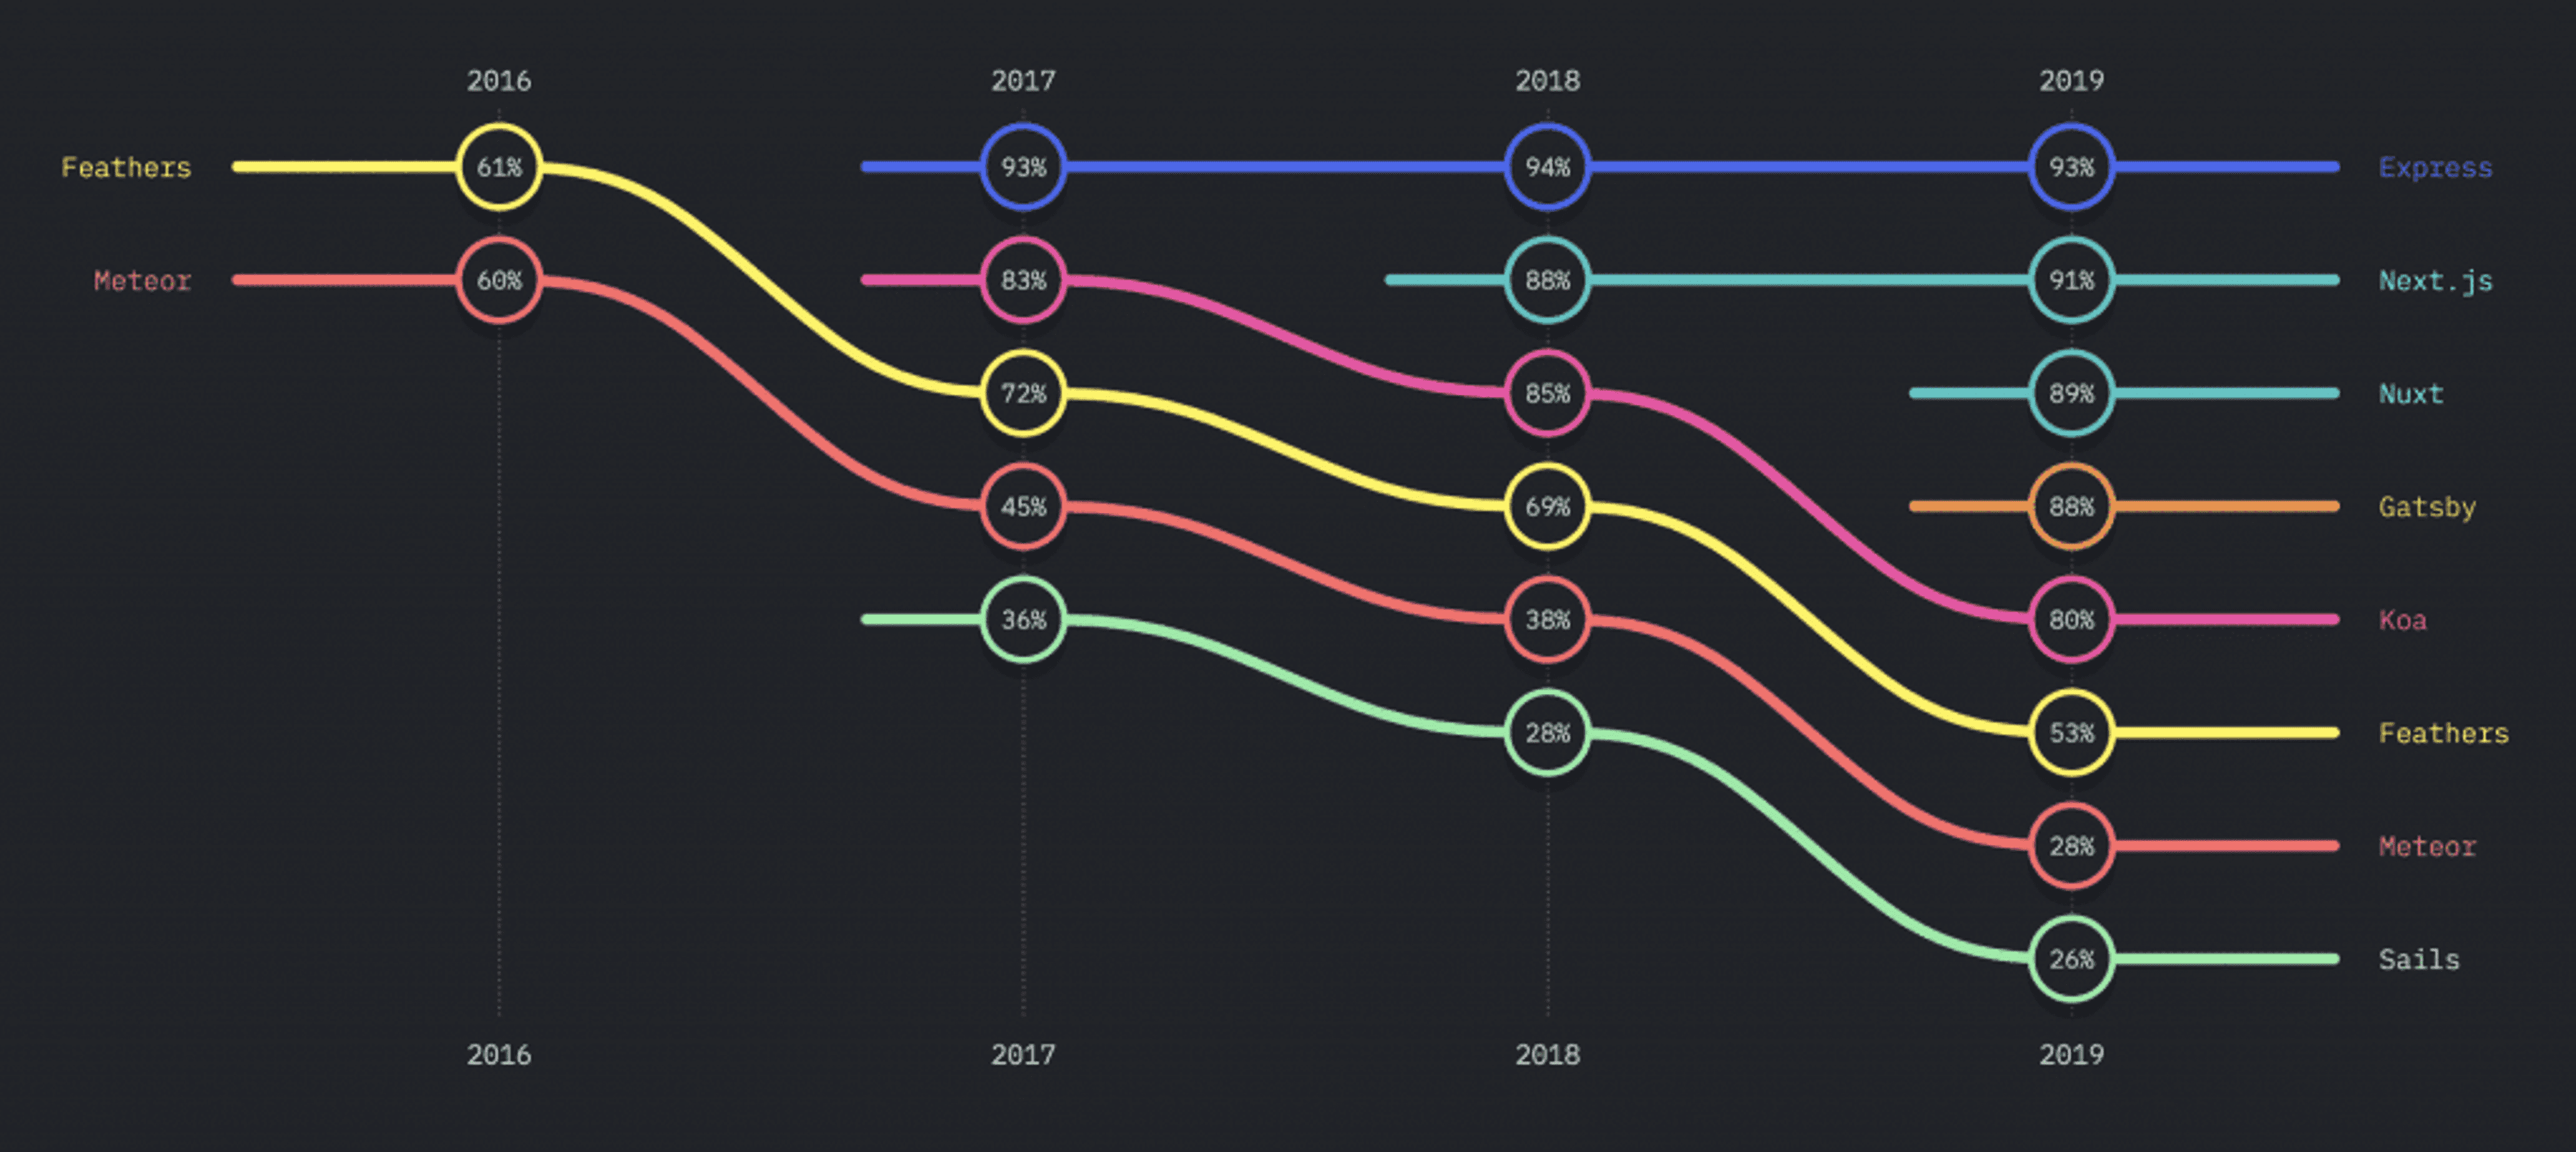 Pourquoi NextJS est le framework qui attire le plus les développeurs JavaScript en 2019 ?